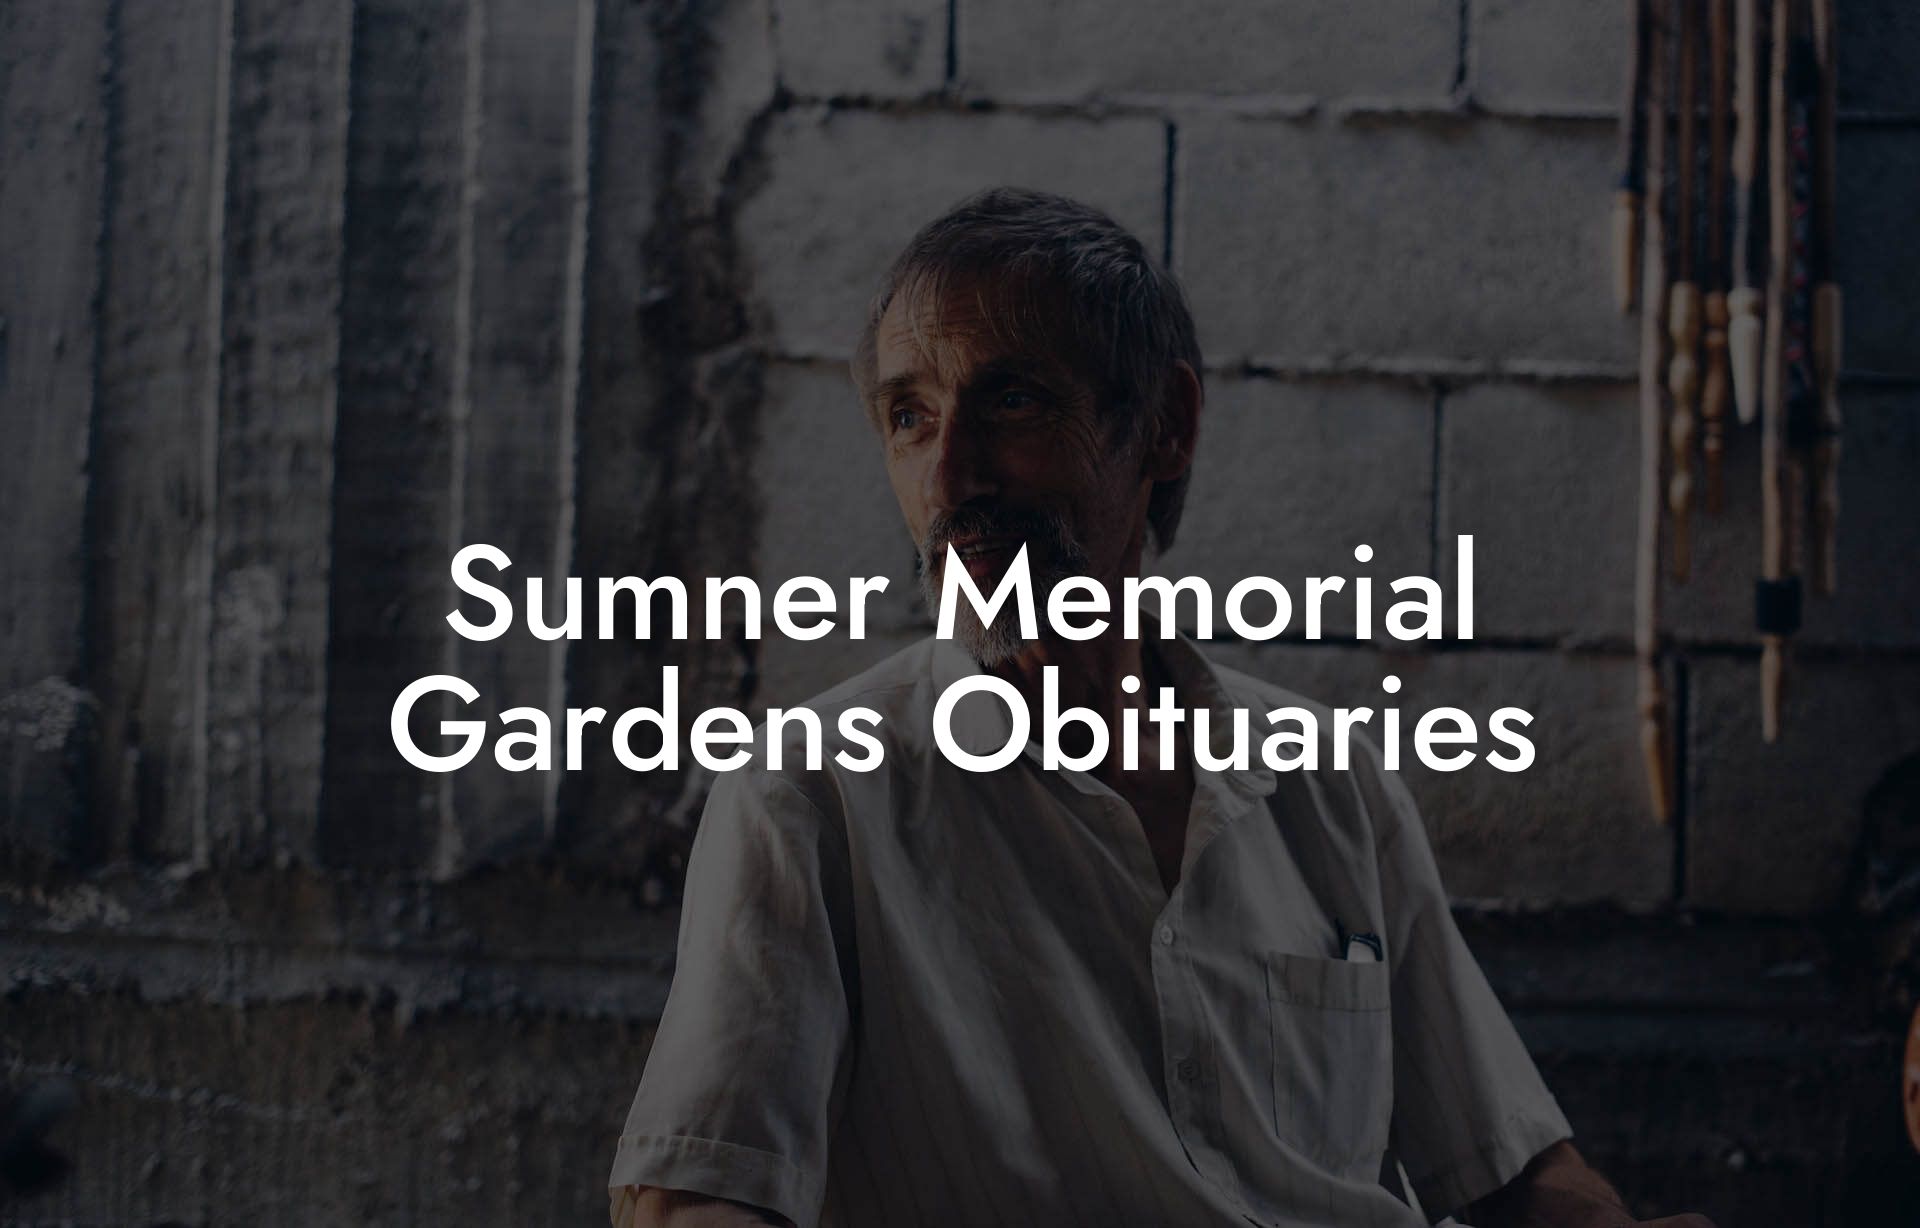 Sumner Memorial Gardens Obituaries